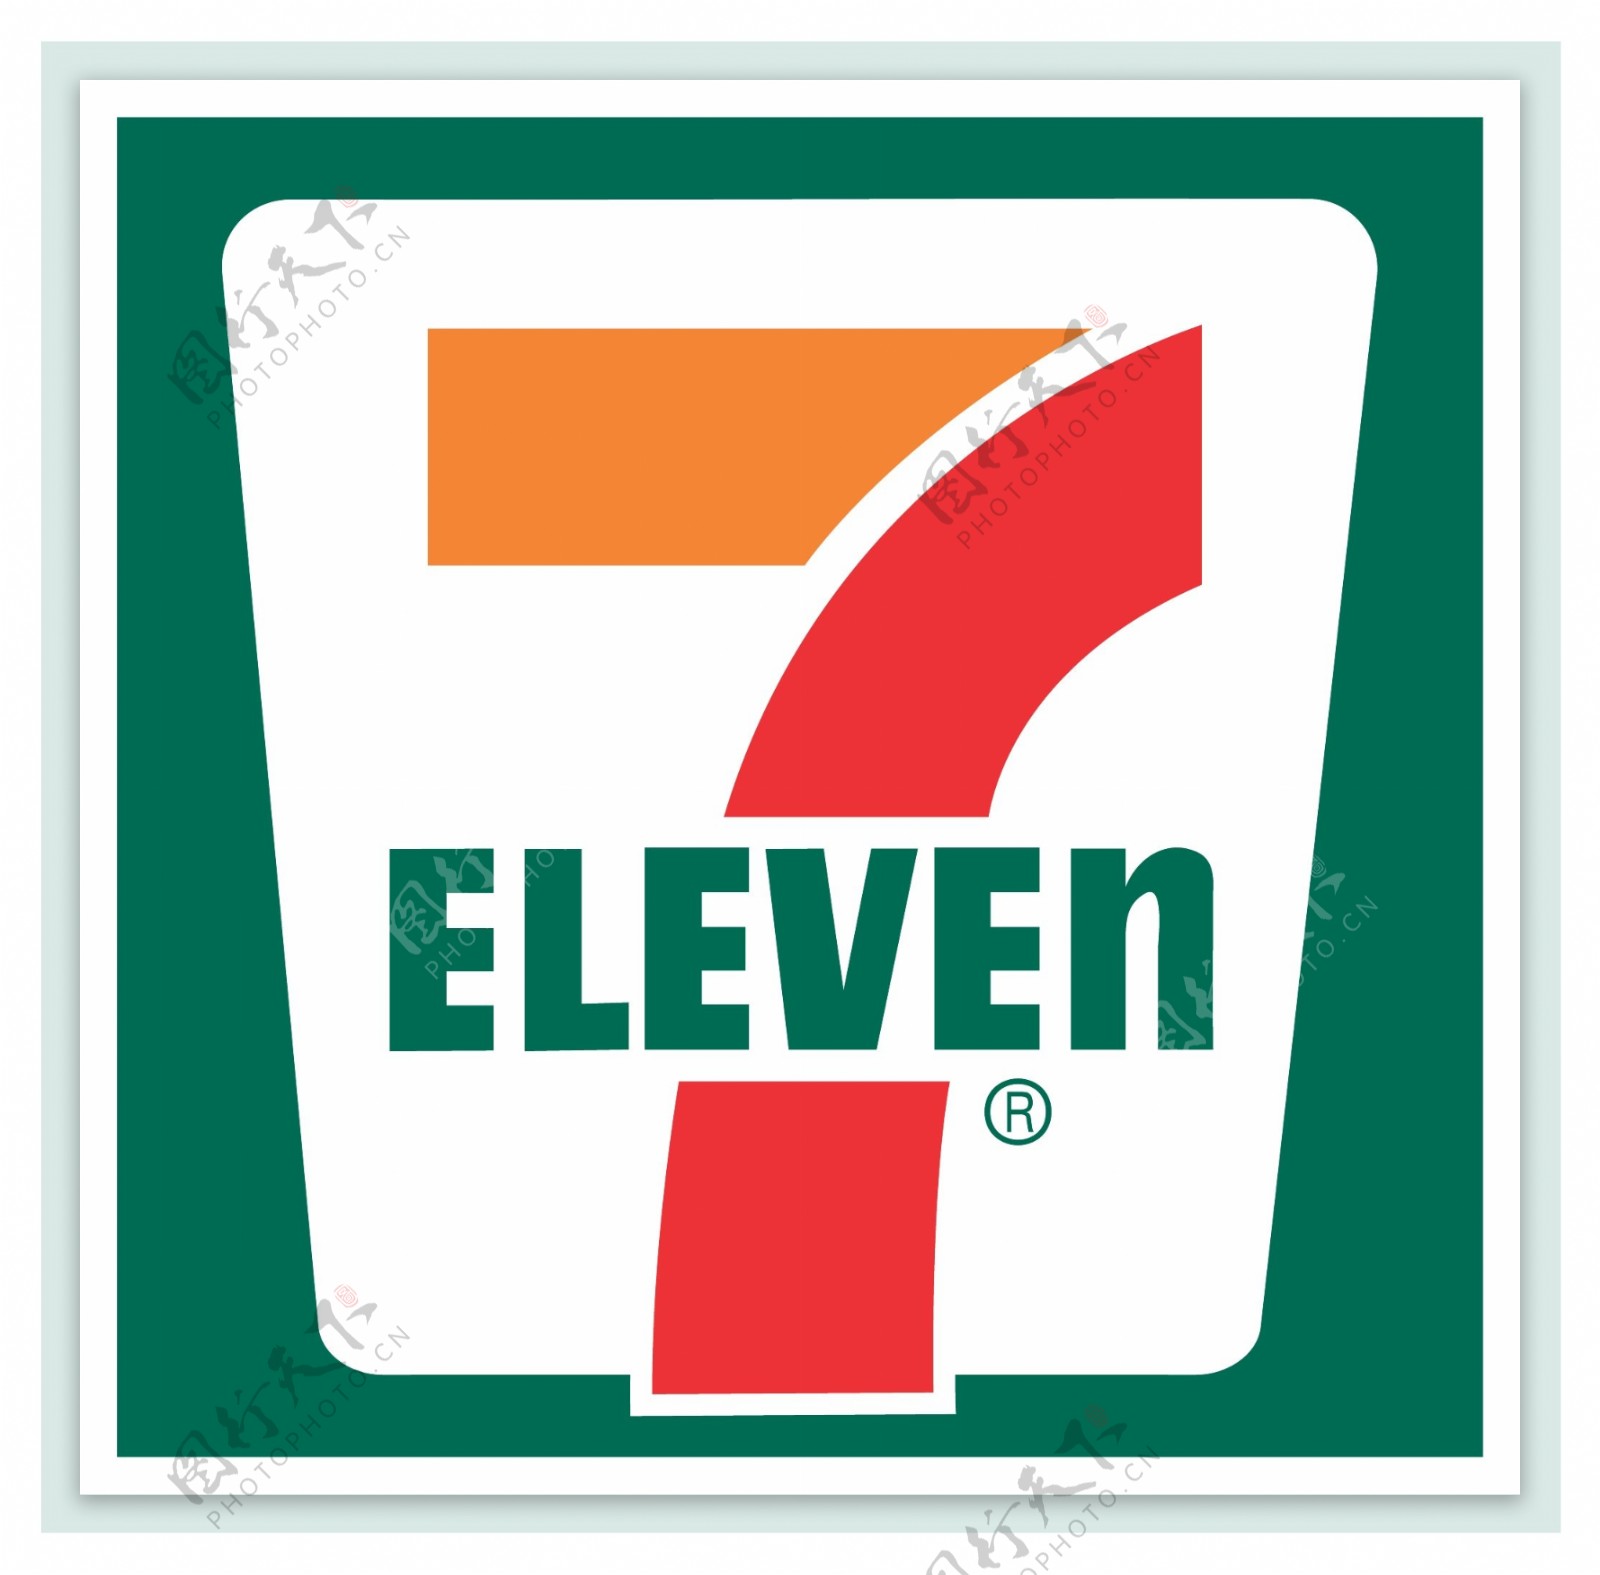 7Eleven标志